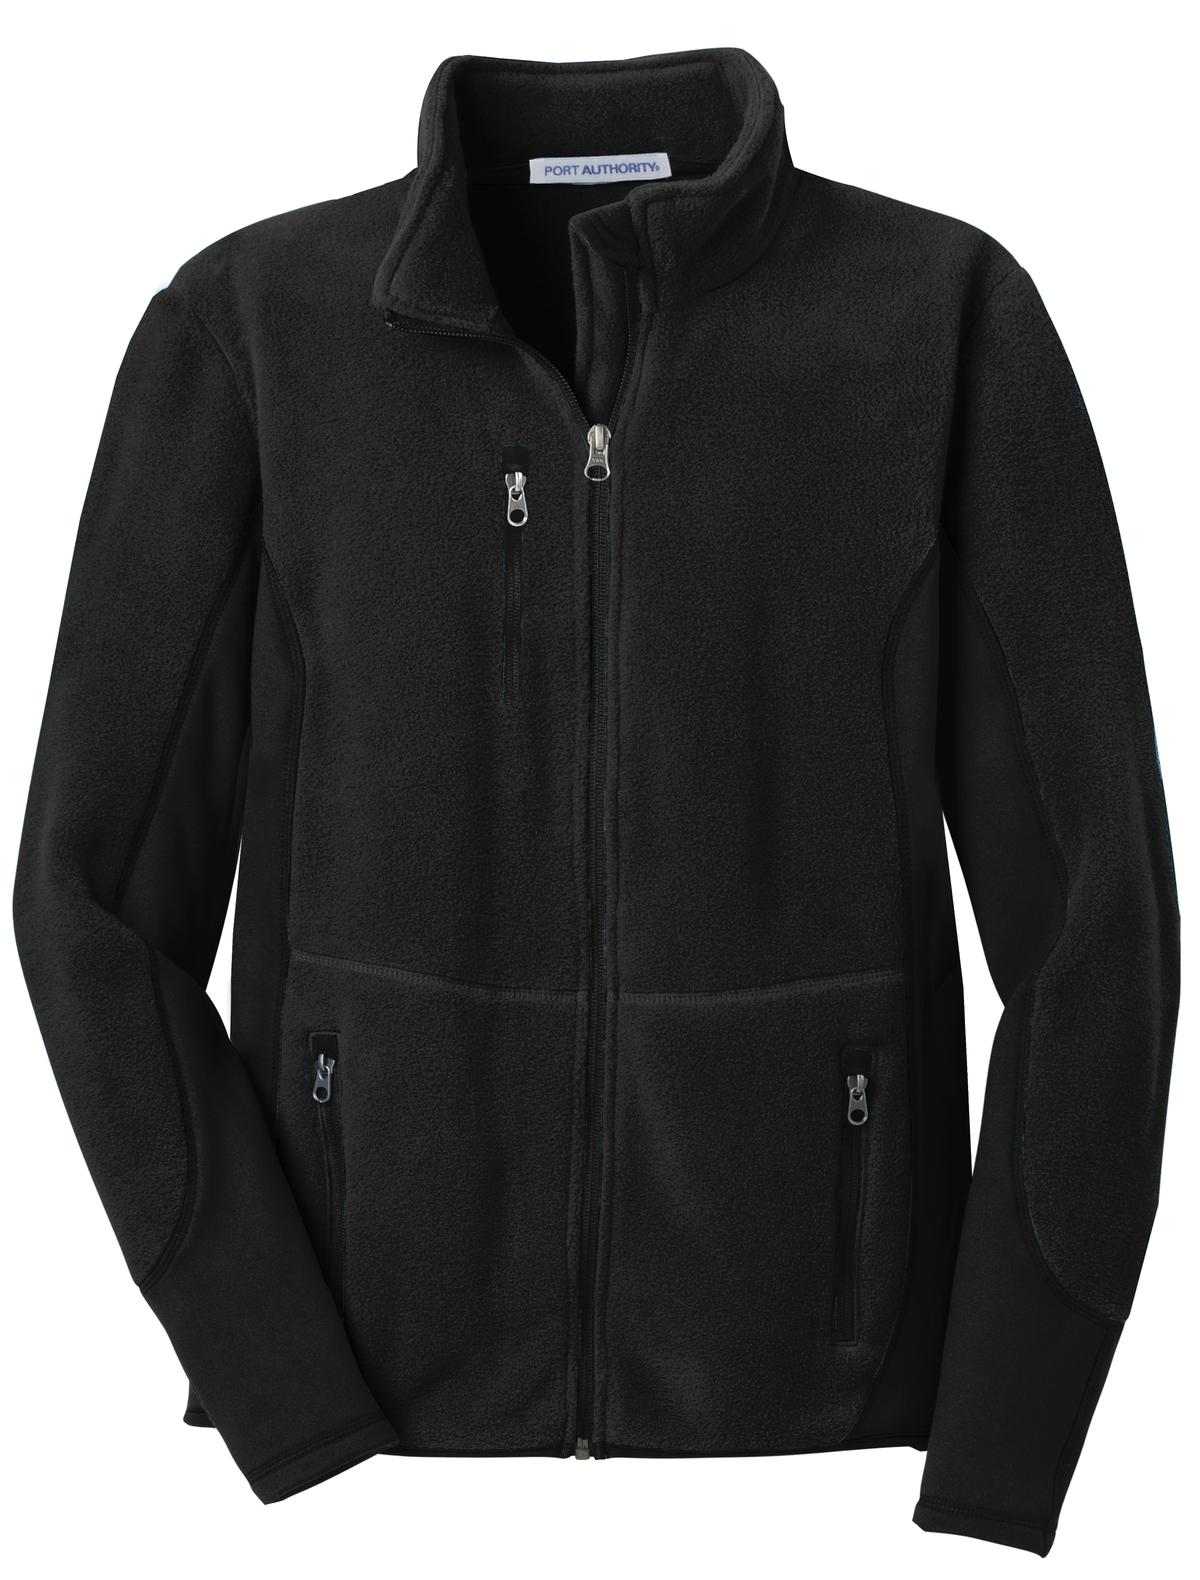 Port Authority F227 R-Tek Pro Fleece Full-Zip Jacket - Black Black - HIT a Double - 5